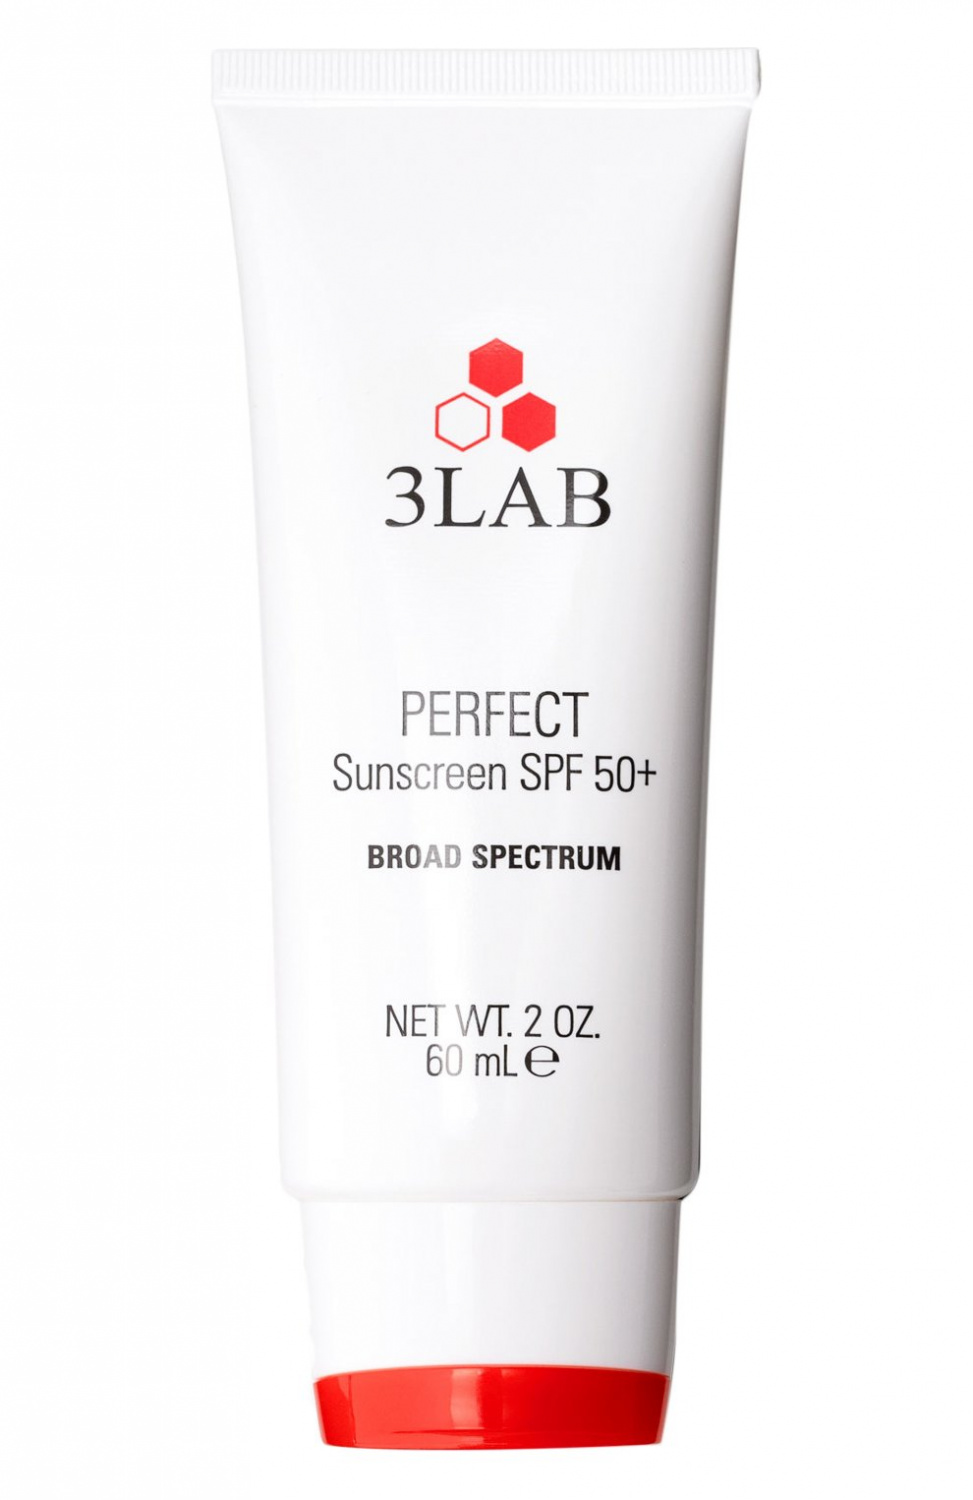 3LAB Perfect Sunscreen SPF50+ Broad Spectrum 58g - интернет-магазин профессиональной косметики Spadream, изображение 41418